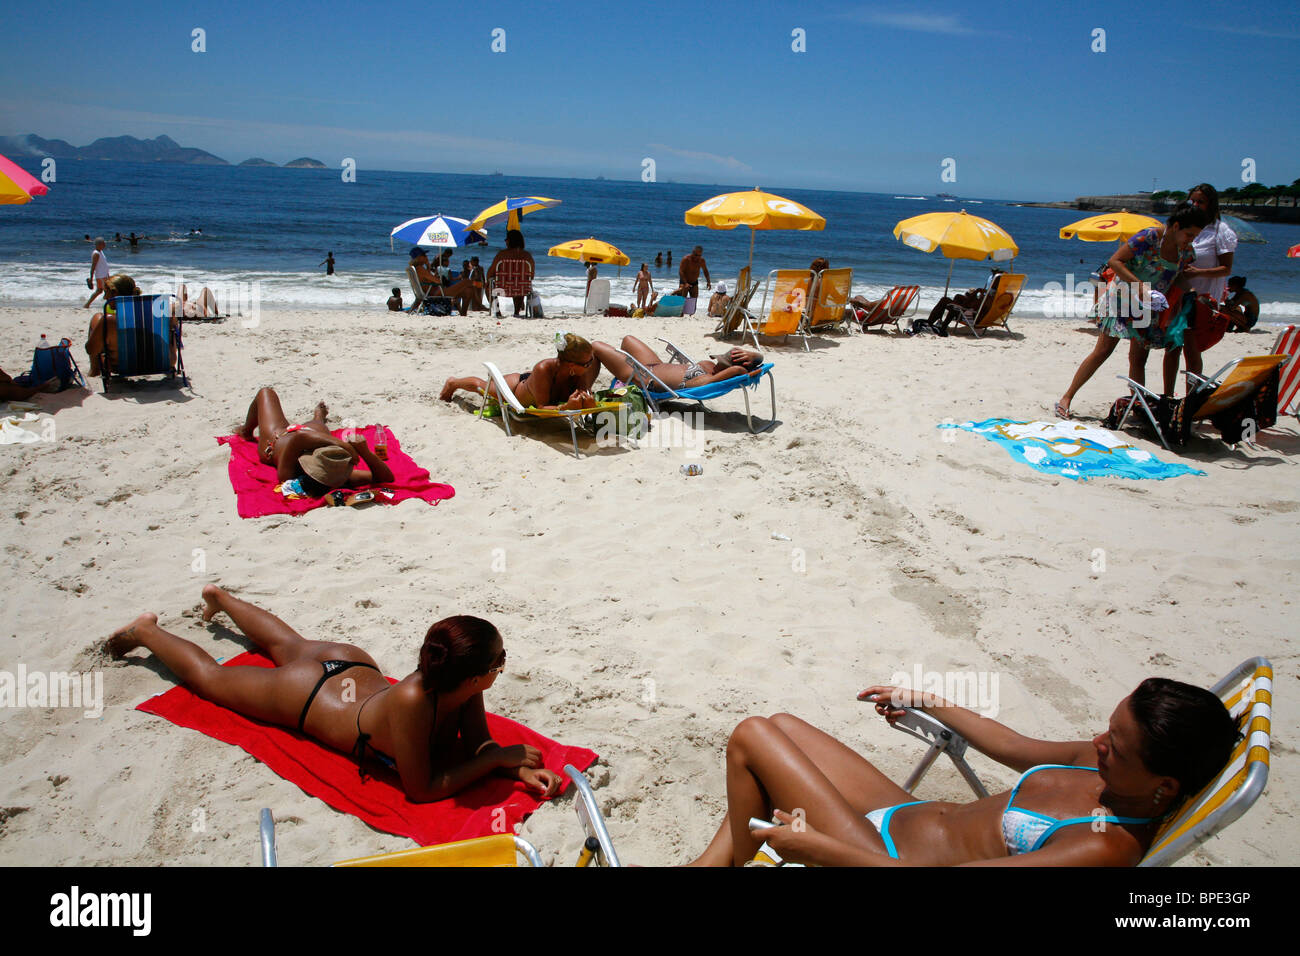 Copacabana beach, Rio de Janeiro, Brazil. Stock Photo